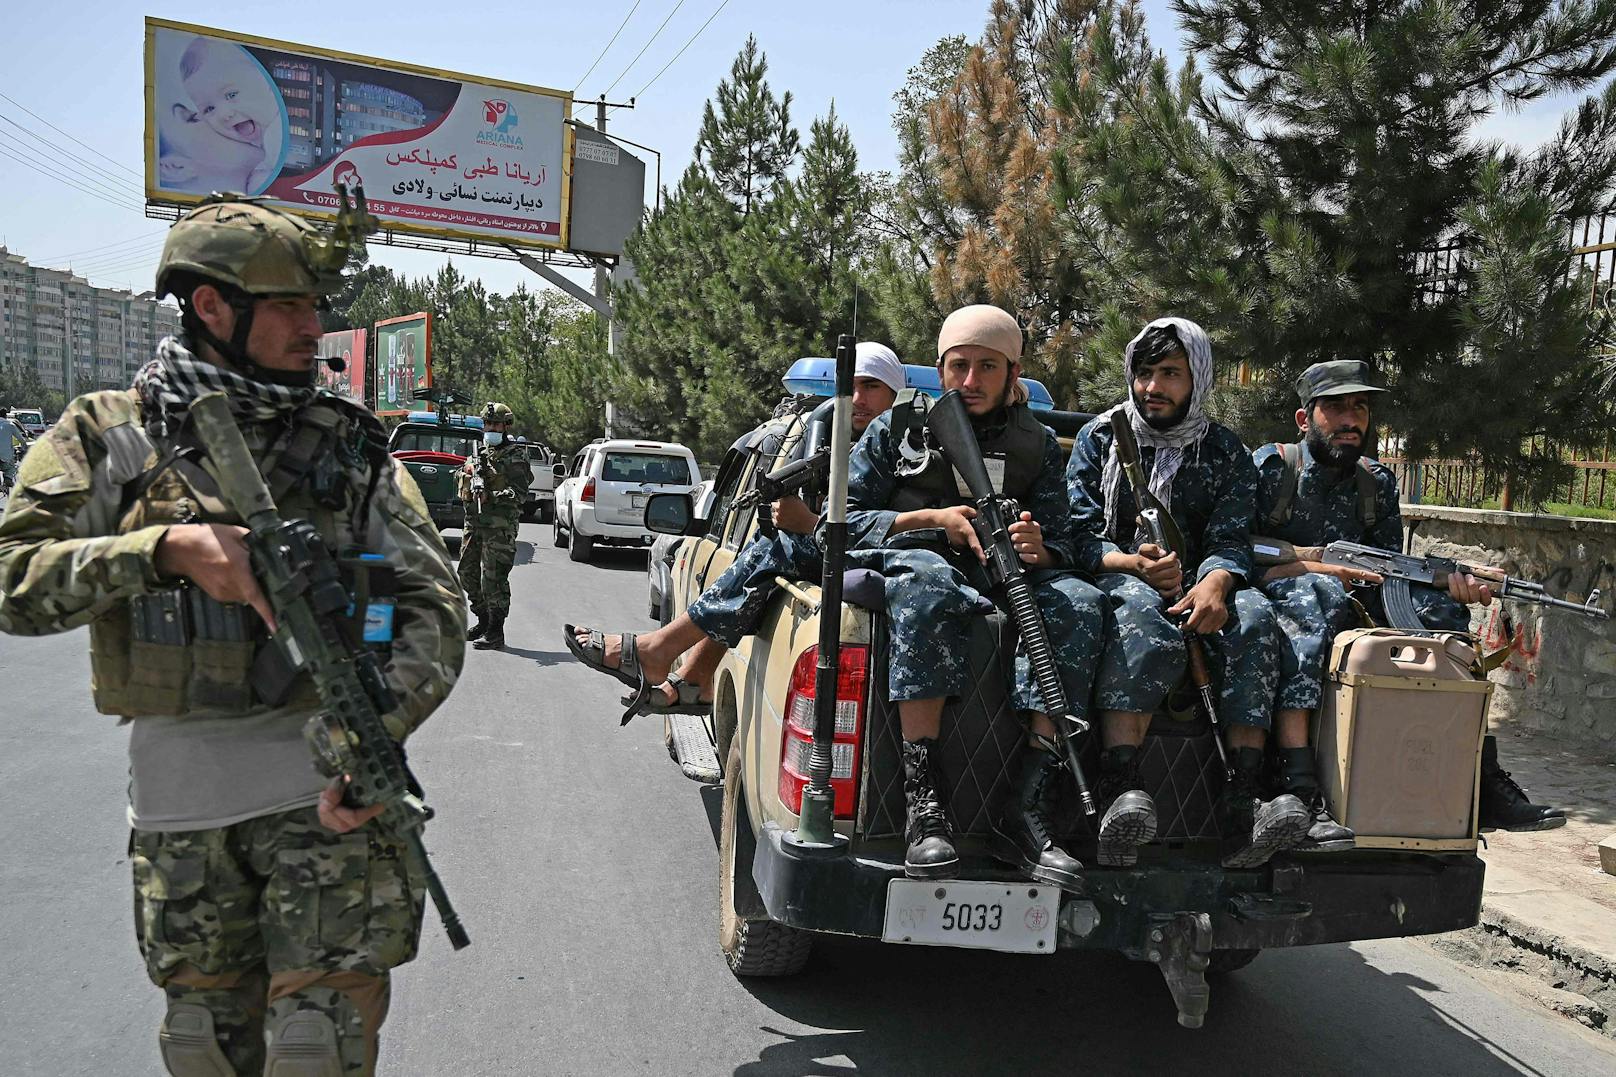 Spezialeinheiten der Taliban gehen regelmäßig auf&nbsp;Patrouillenfahrt durch die afghanische Hauptstadt.&nbsp;<br>